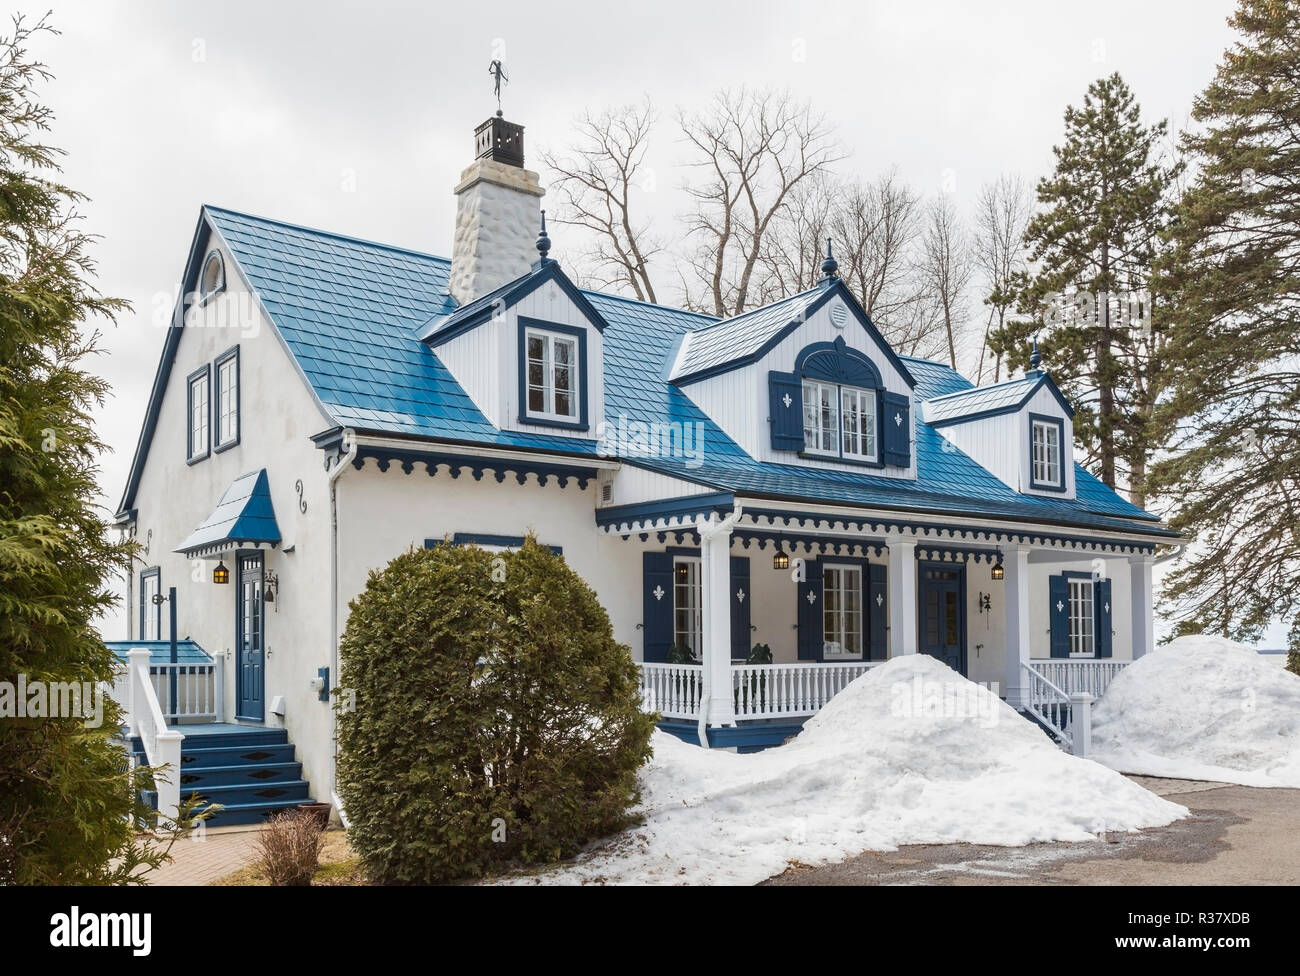 1920 ancien crépi blanc avec garniture bleue style chalet avec façade maison en tuiles acier bleu au début du printemps, Québec, Canada Banque D'Images